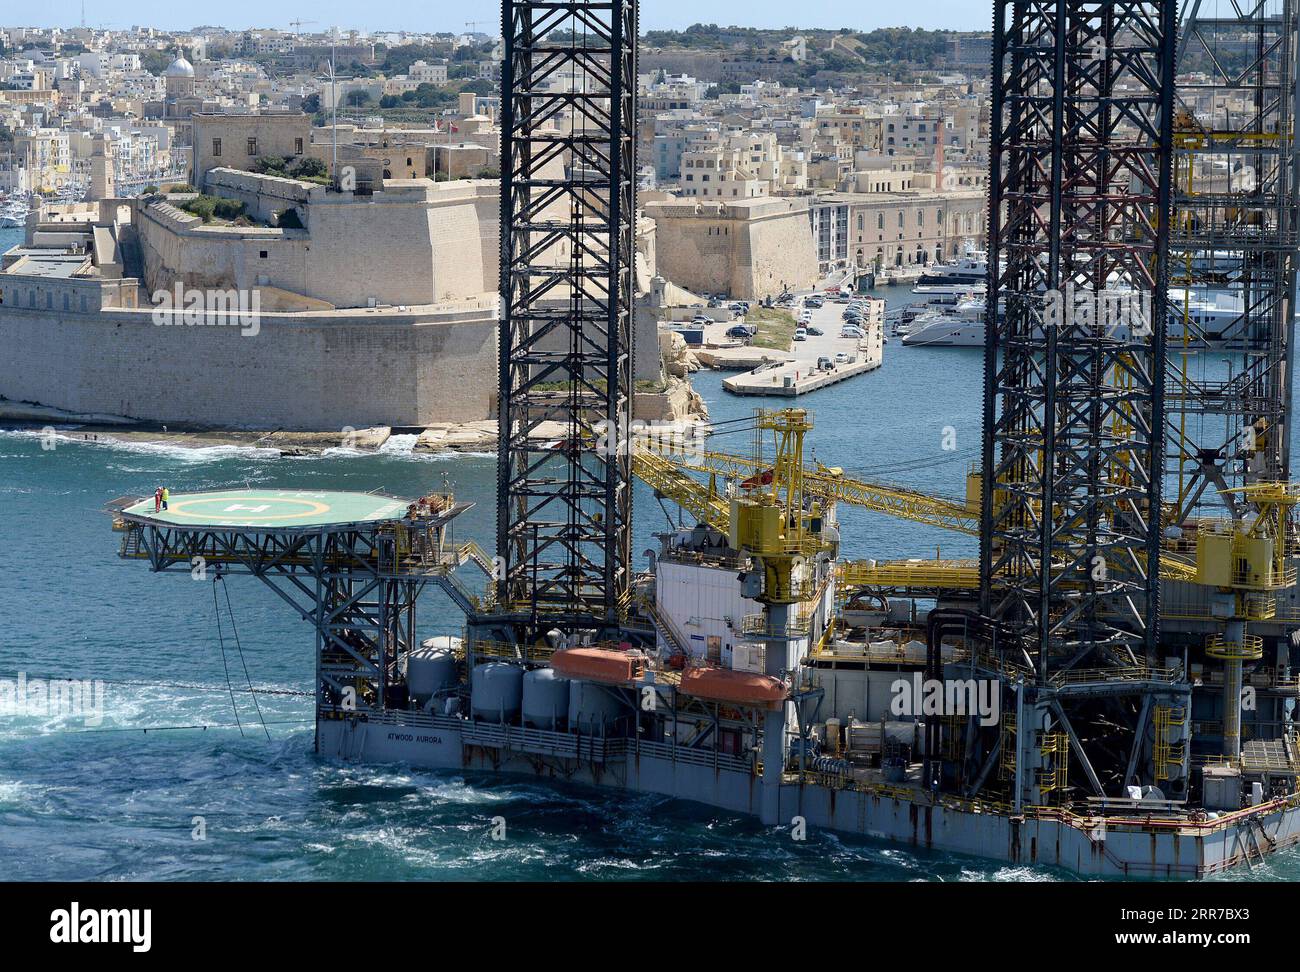 210325 -- VALLETTA, 25. März 2021 -- am 24. März 2021 wird eine Ölplattform aus dem Valletta Grand Harbour, Valletta, Hauptstadt Maltas, entfernt. Die Ölplattform Atwood Aurora ruinierte die Skyline von Valletta seit einigen Jahren. Sie wird schließlich nach einer Vereinbarung mit der Werft, die mit der Instandhaltung beauftragt ist, entfernt. Der Ausbau folgt dem Ausbau eines anderen Ölfelds, das vor zwei Wochen entfernt wurde. Foto von /Xinhua MALTA-VALLETTA-MARITIME-OILRIG-ENTFERNT JonathanxBorg PUBLICATIONxNOTxINxCHN Stockfoto